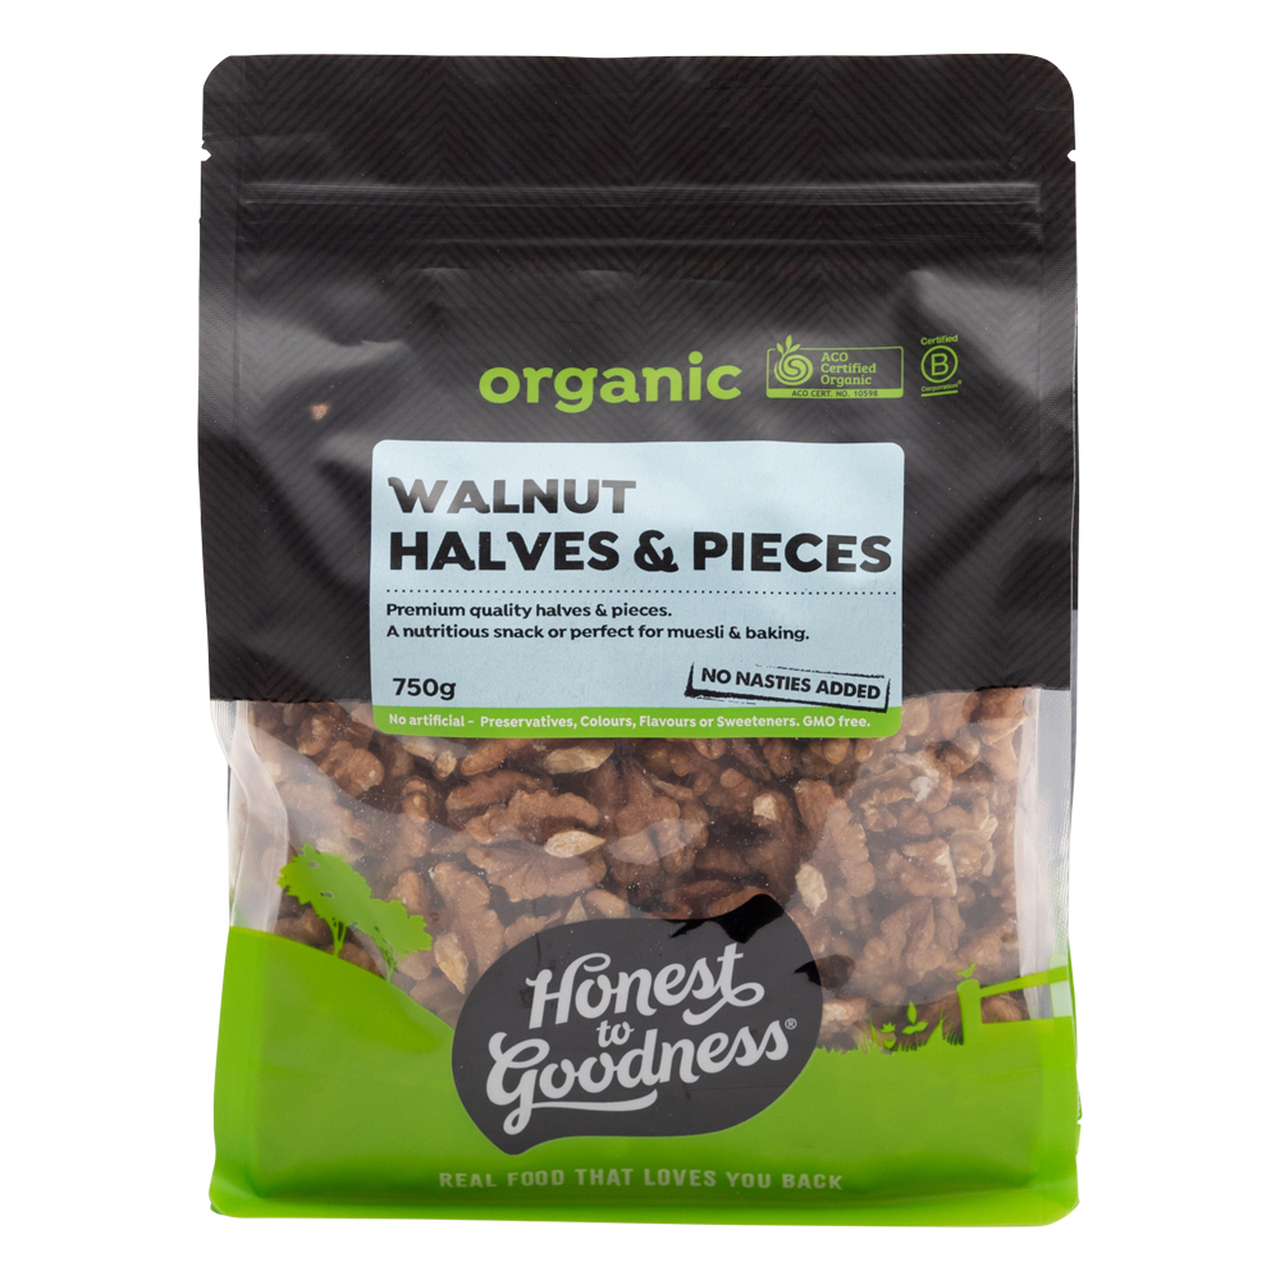 Walnuts Kernels Raw Honest Goodness Certified Organic (750g)